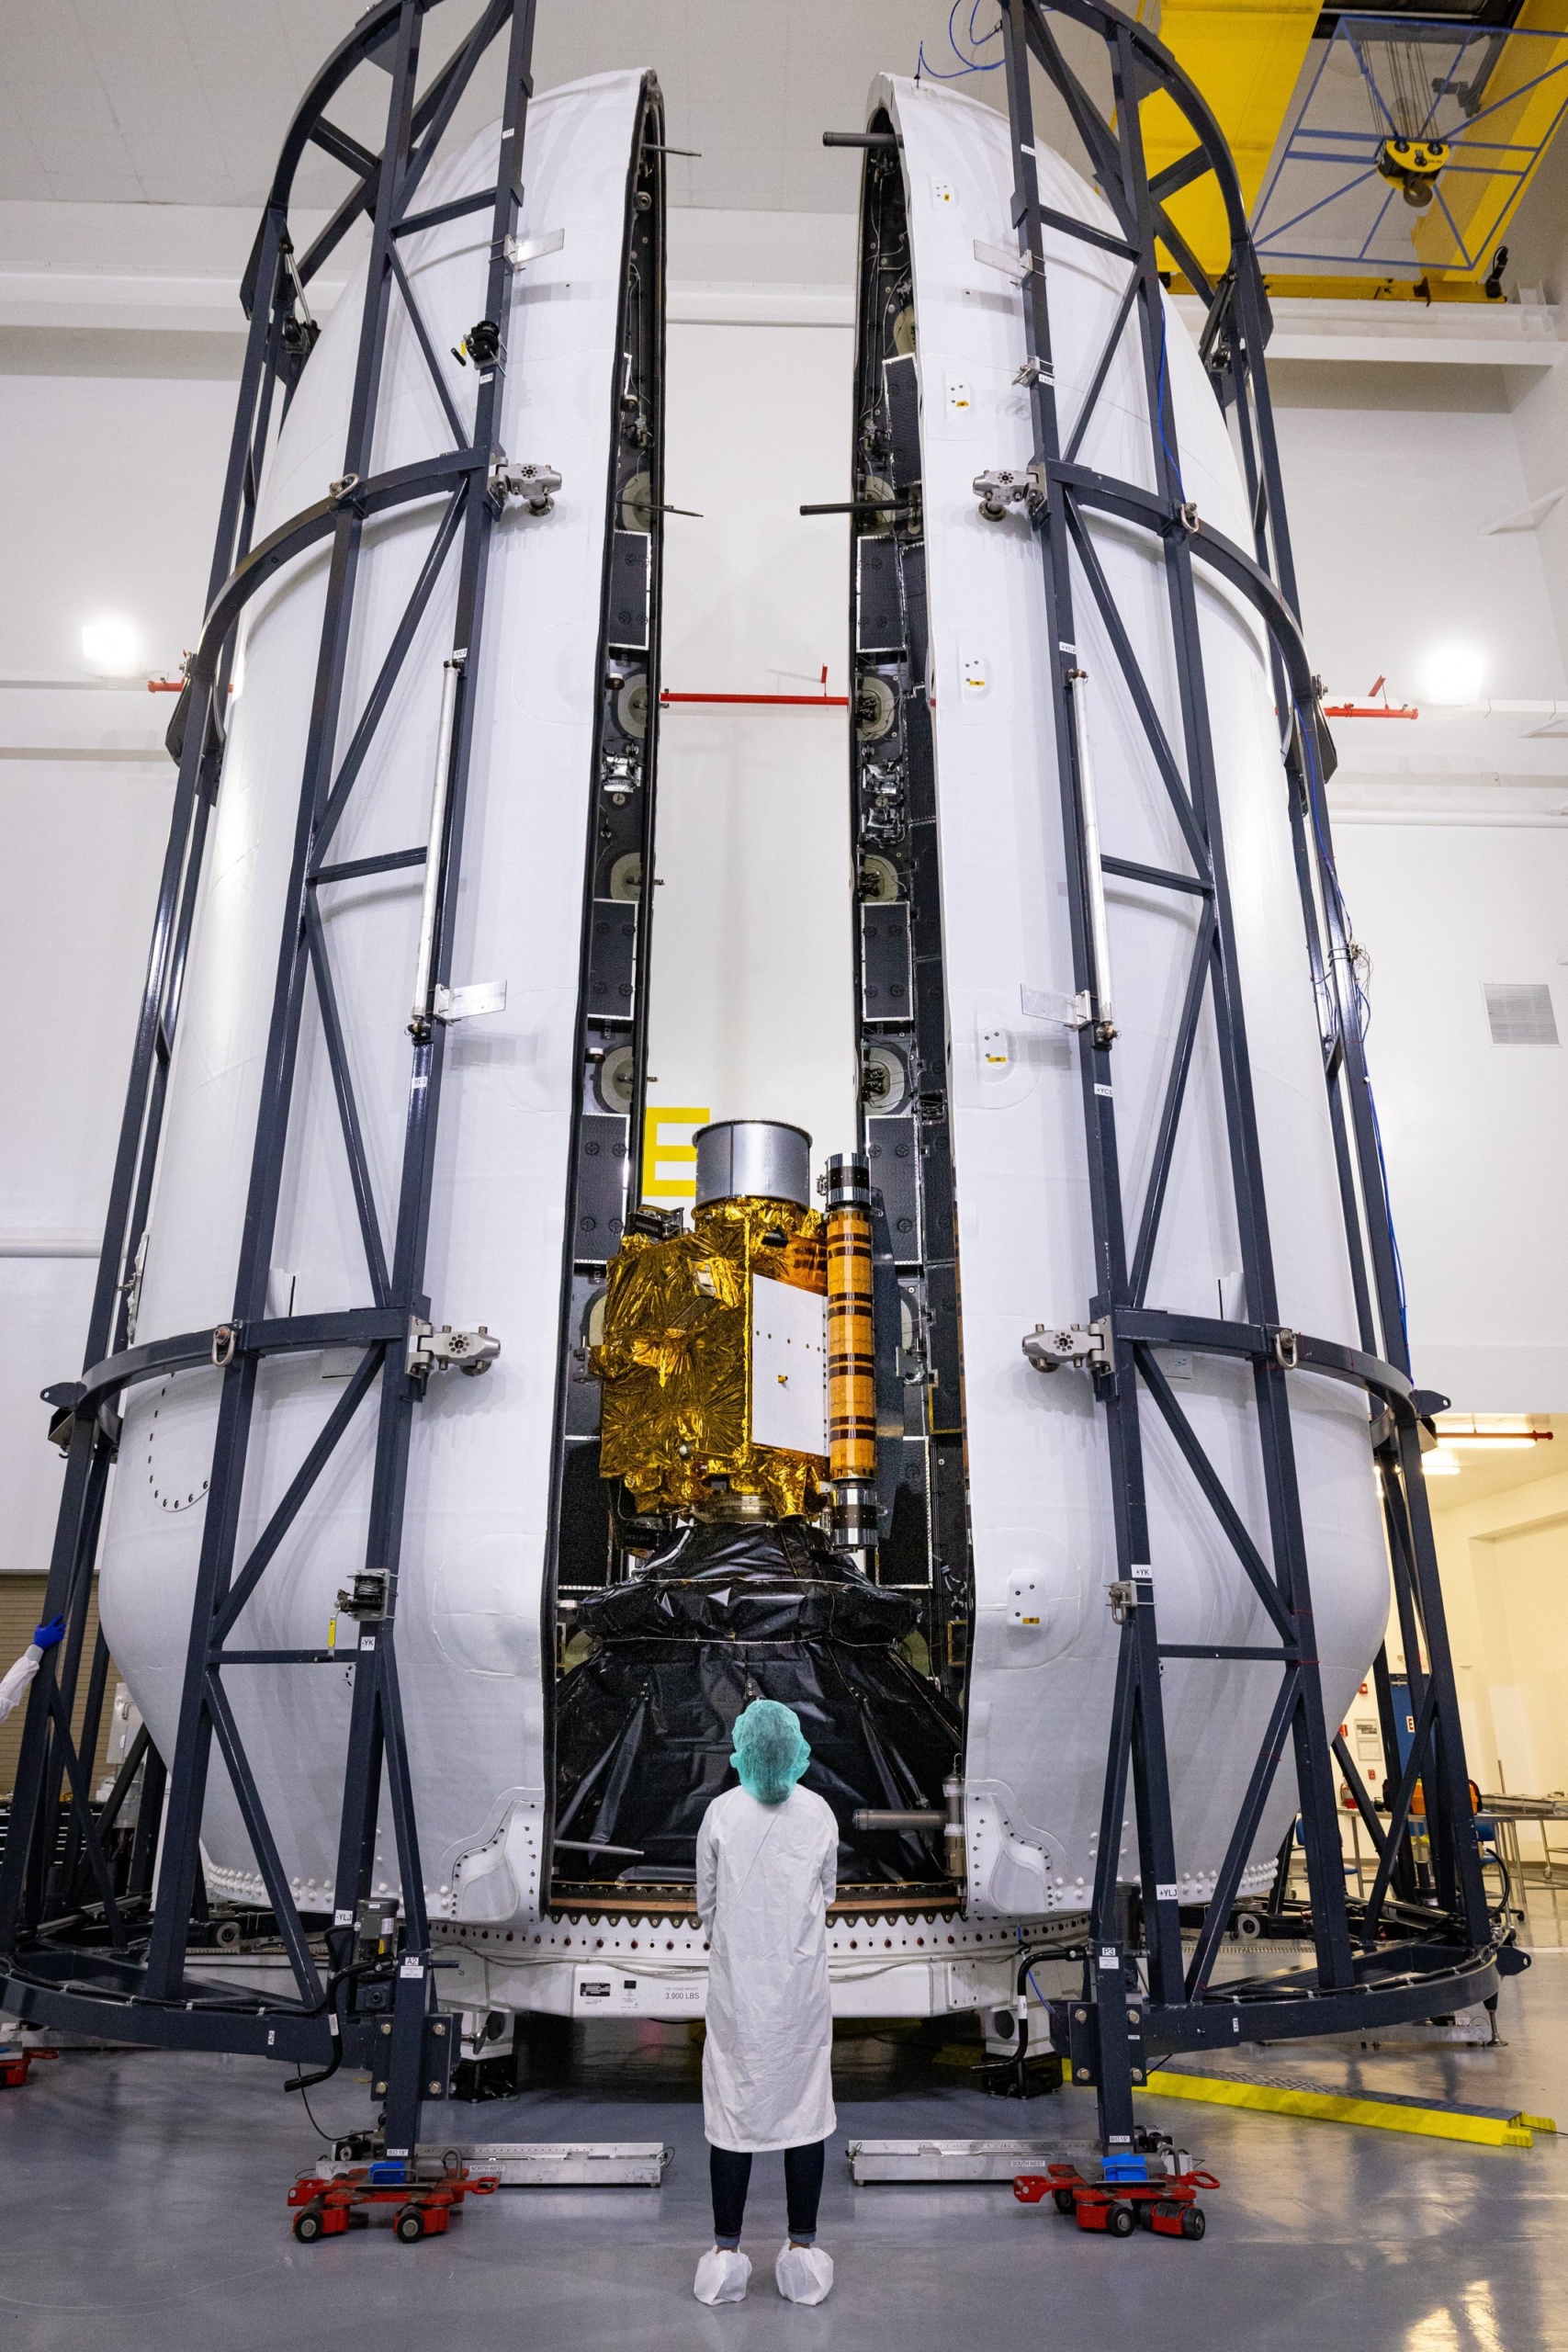 SpaceX запустила ударный зонд NASA DART для проверки планетарной защиты — в 2022 году он протаранит астероид, чтобы изменить его траекторию полета